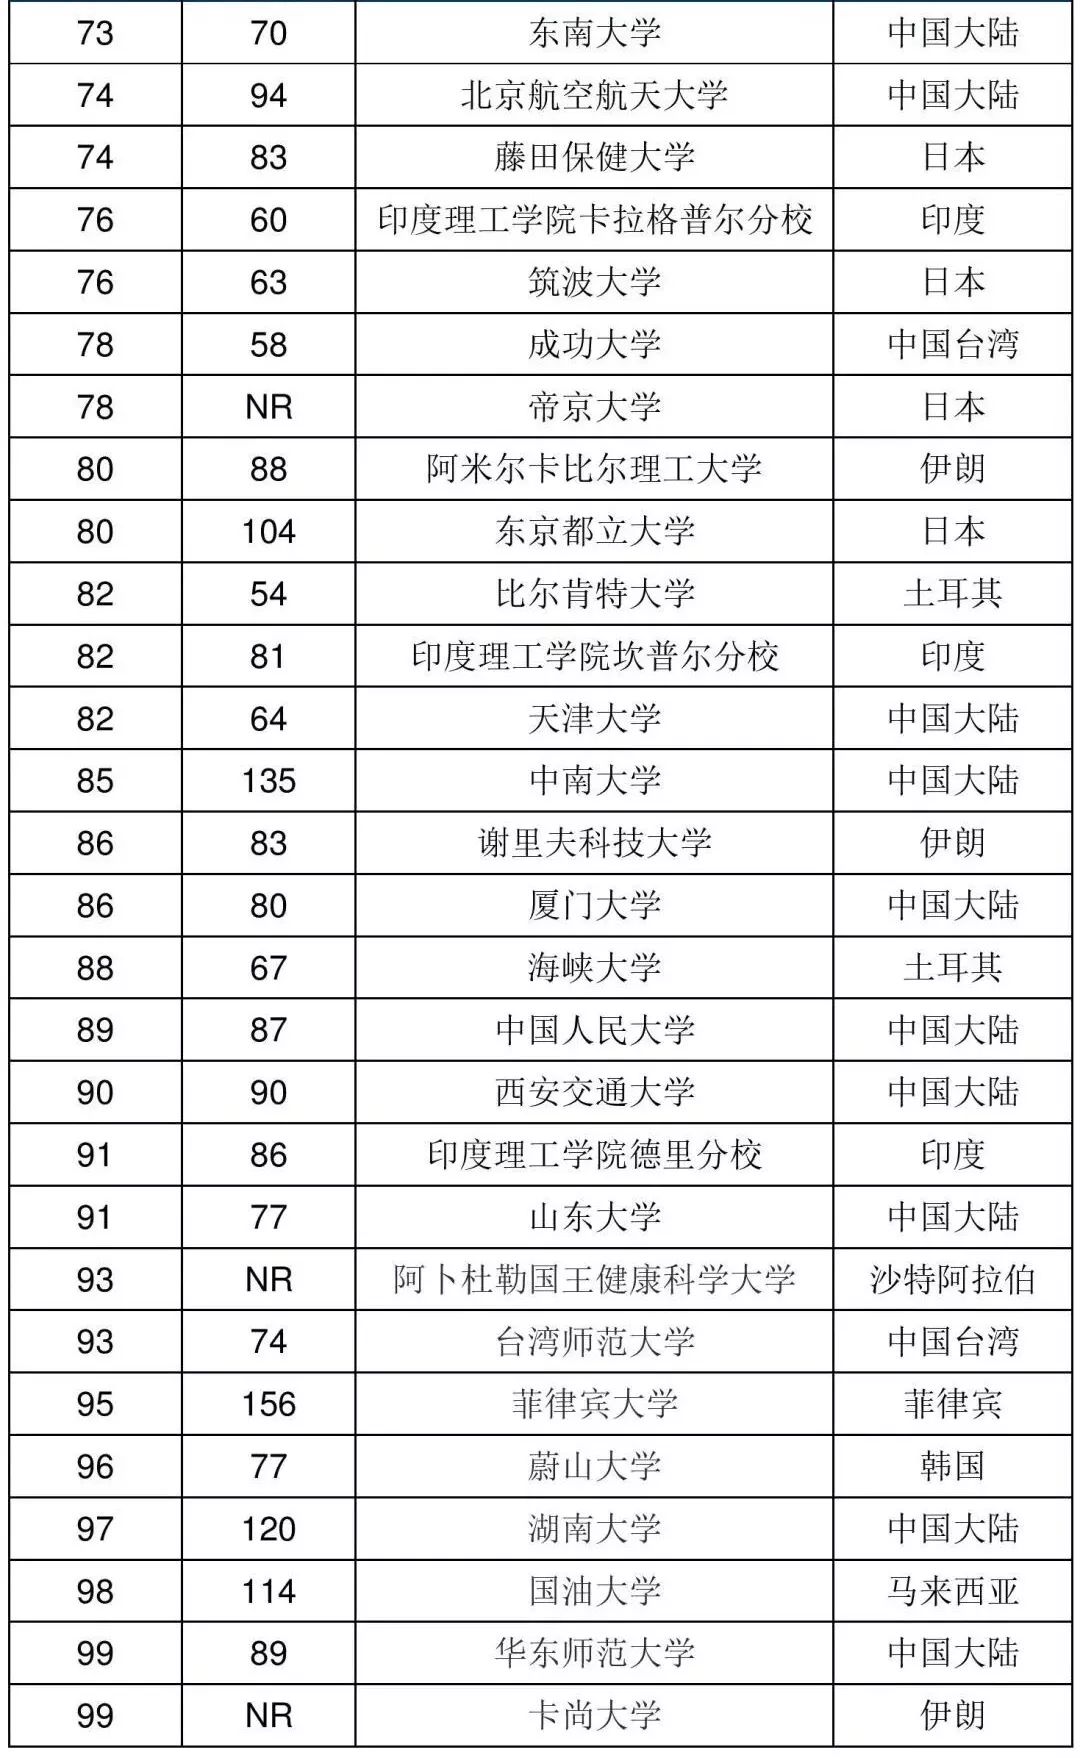 2019亚洲高校排行榜_最新 2019亚洲大学排名出炉,中国百所高校上榜